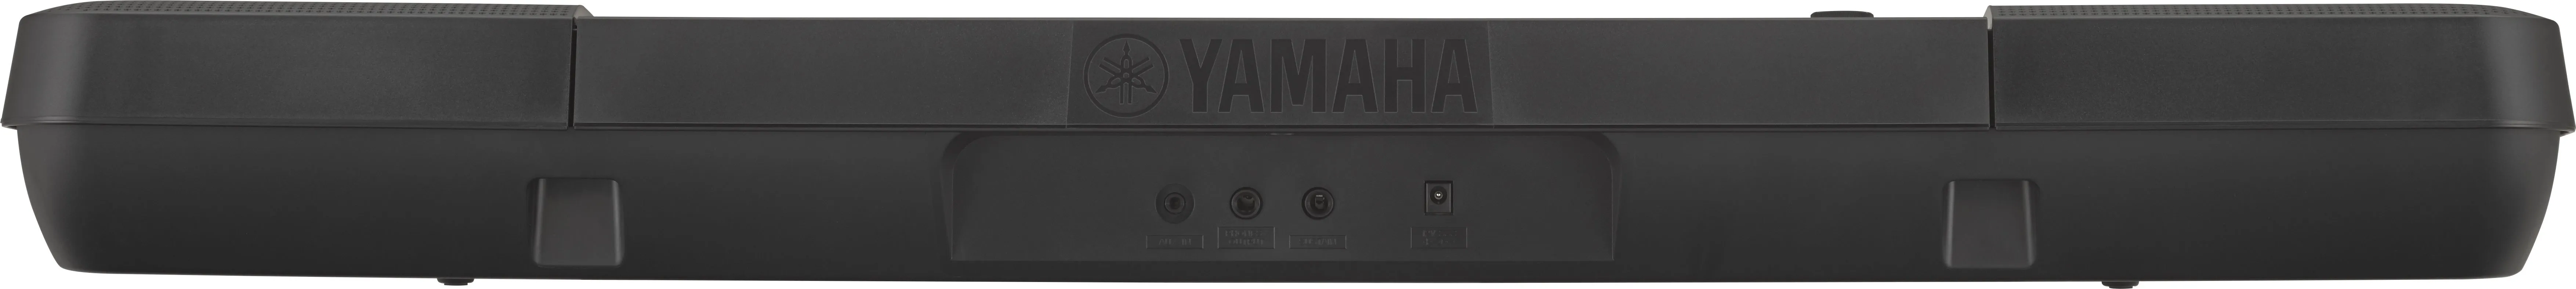 Yamaha PSR E253